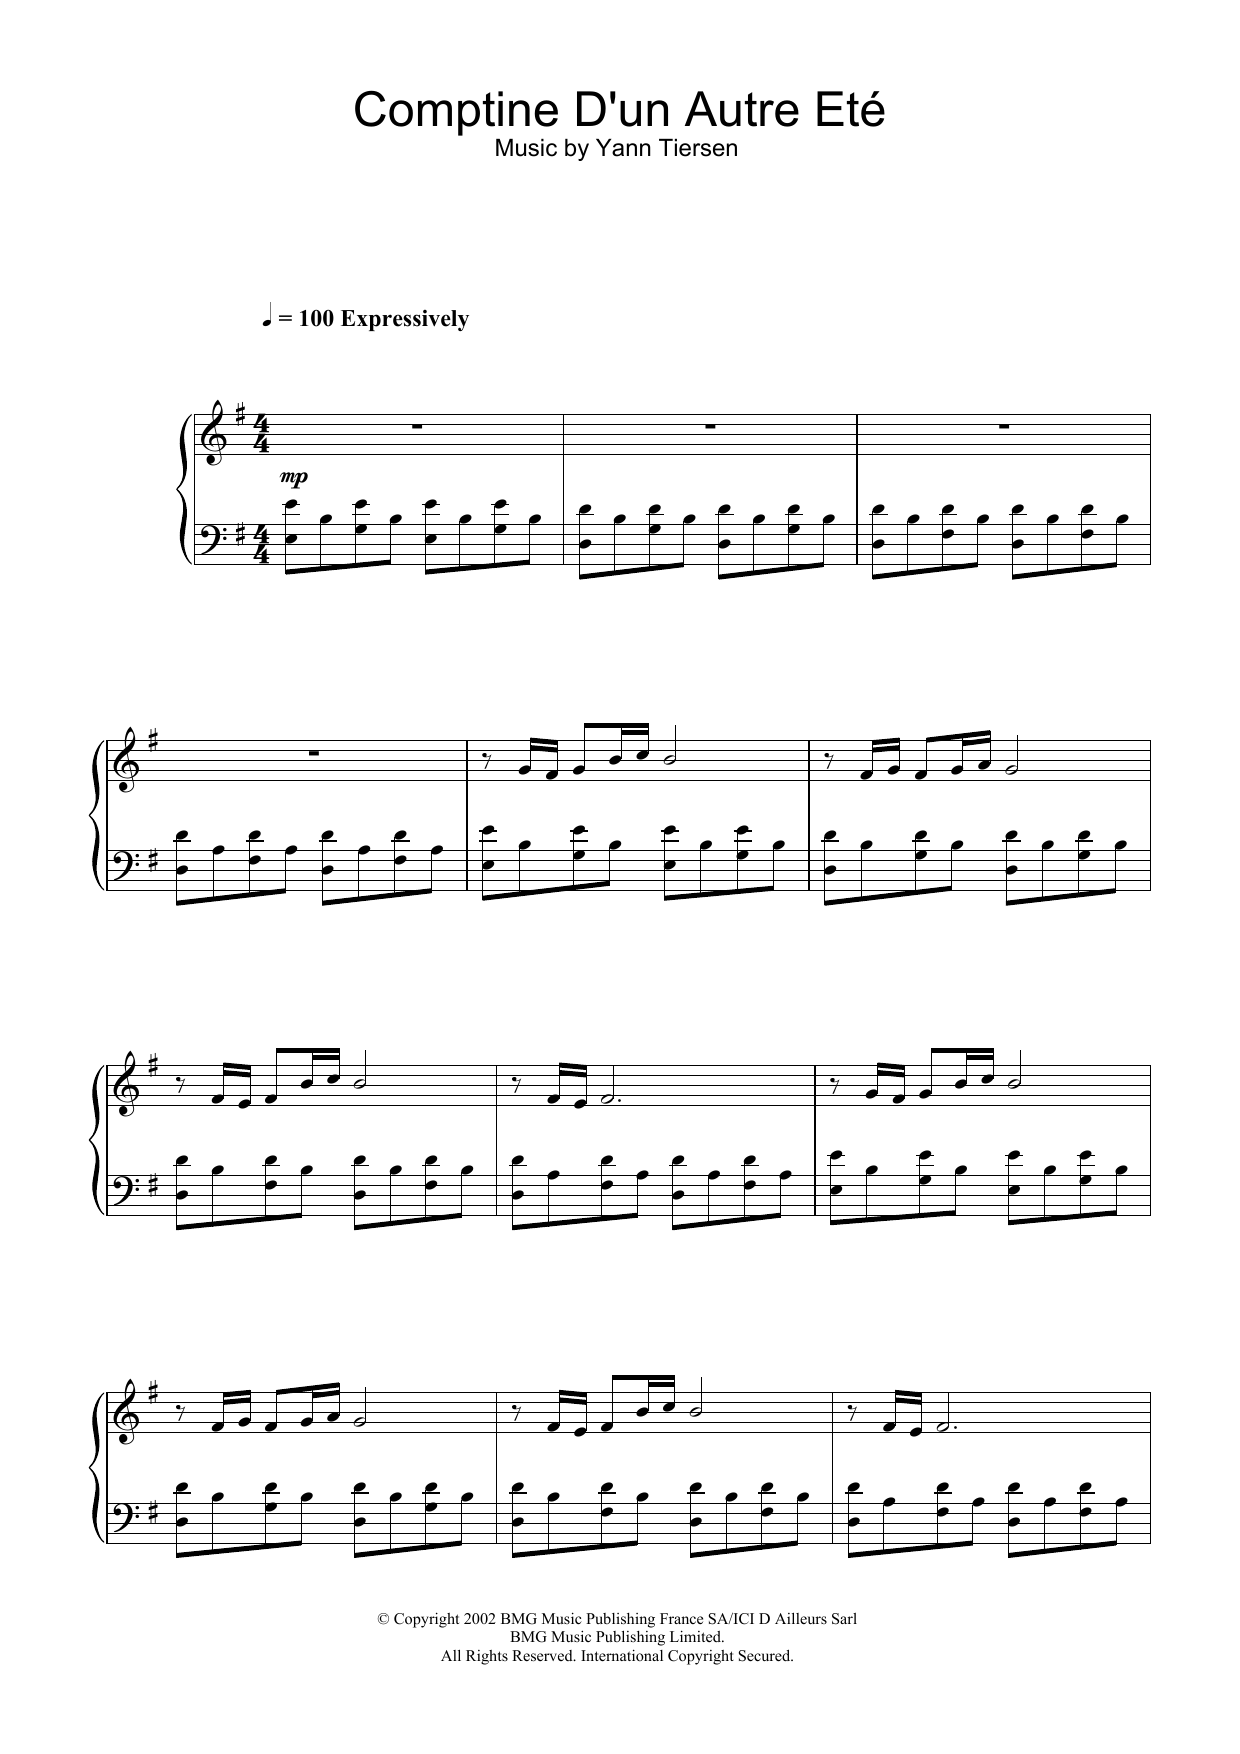 Yann Tiersen Comptine D'un Autre Eté (from Amélie) Sheet Music Notes & Chords for Piano - Download or Print PDF